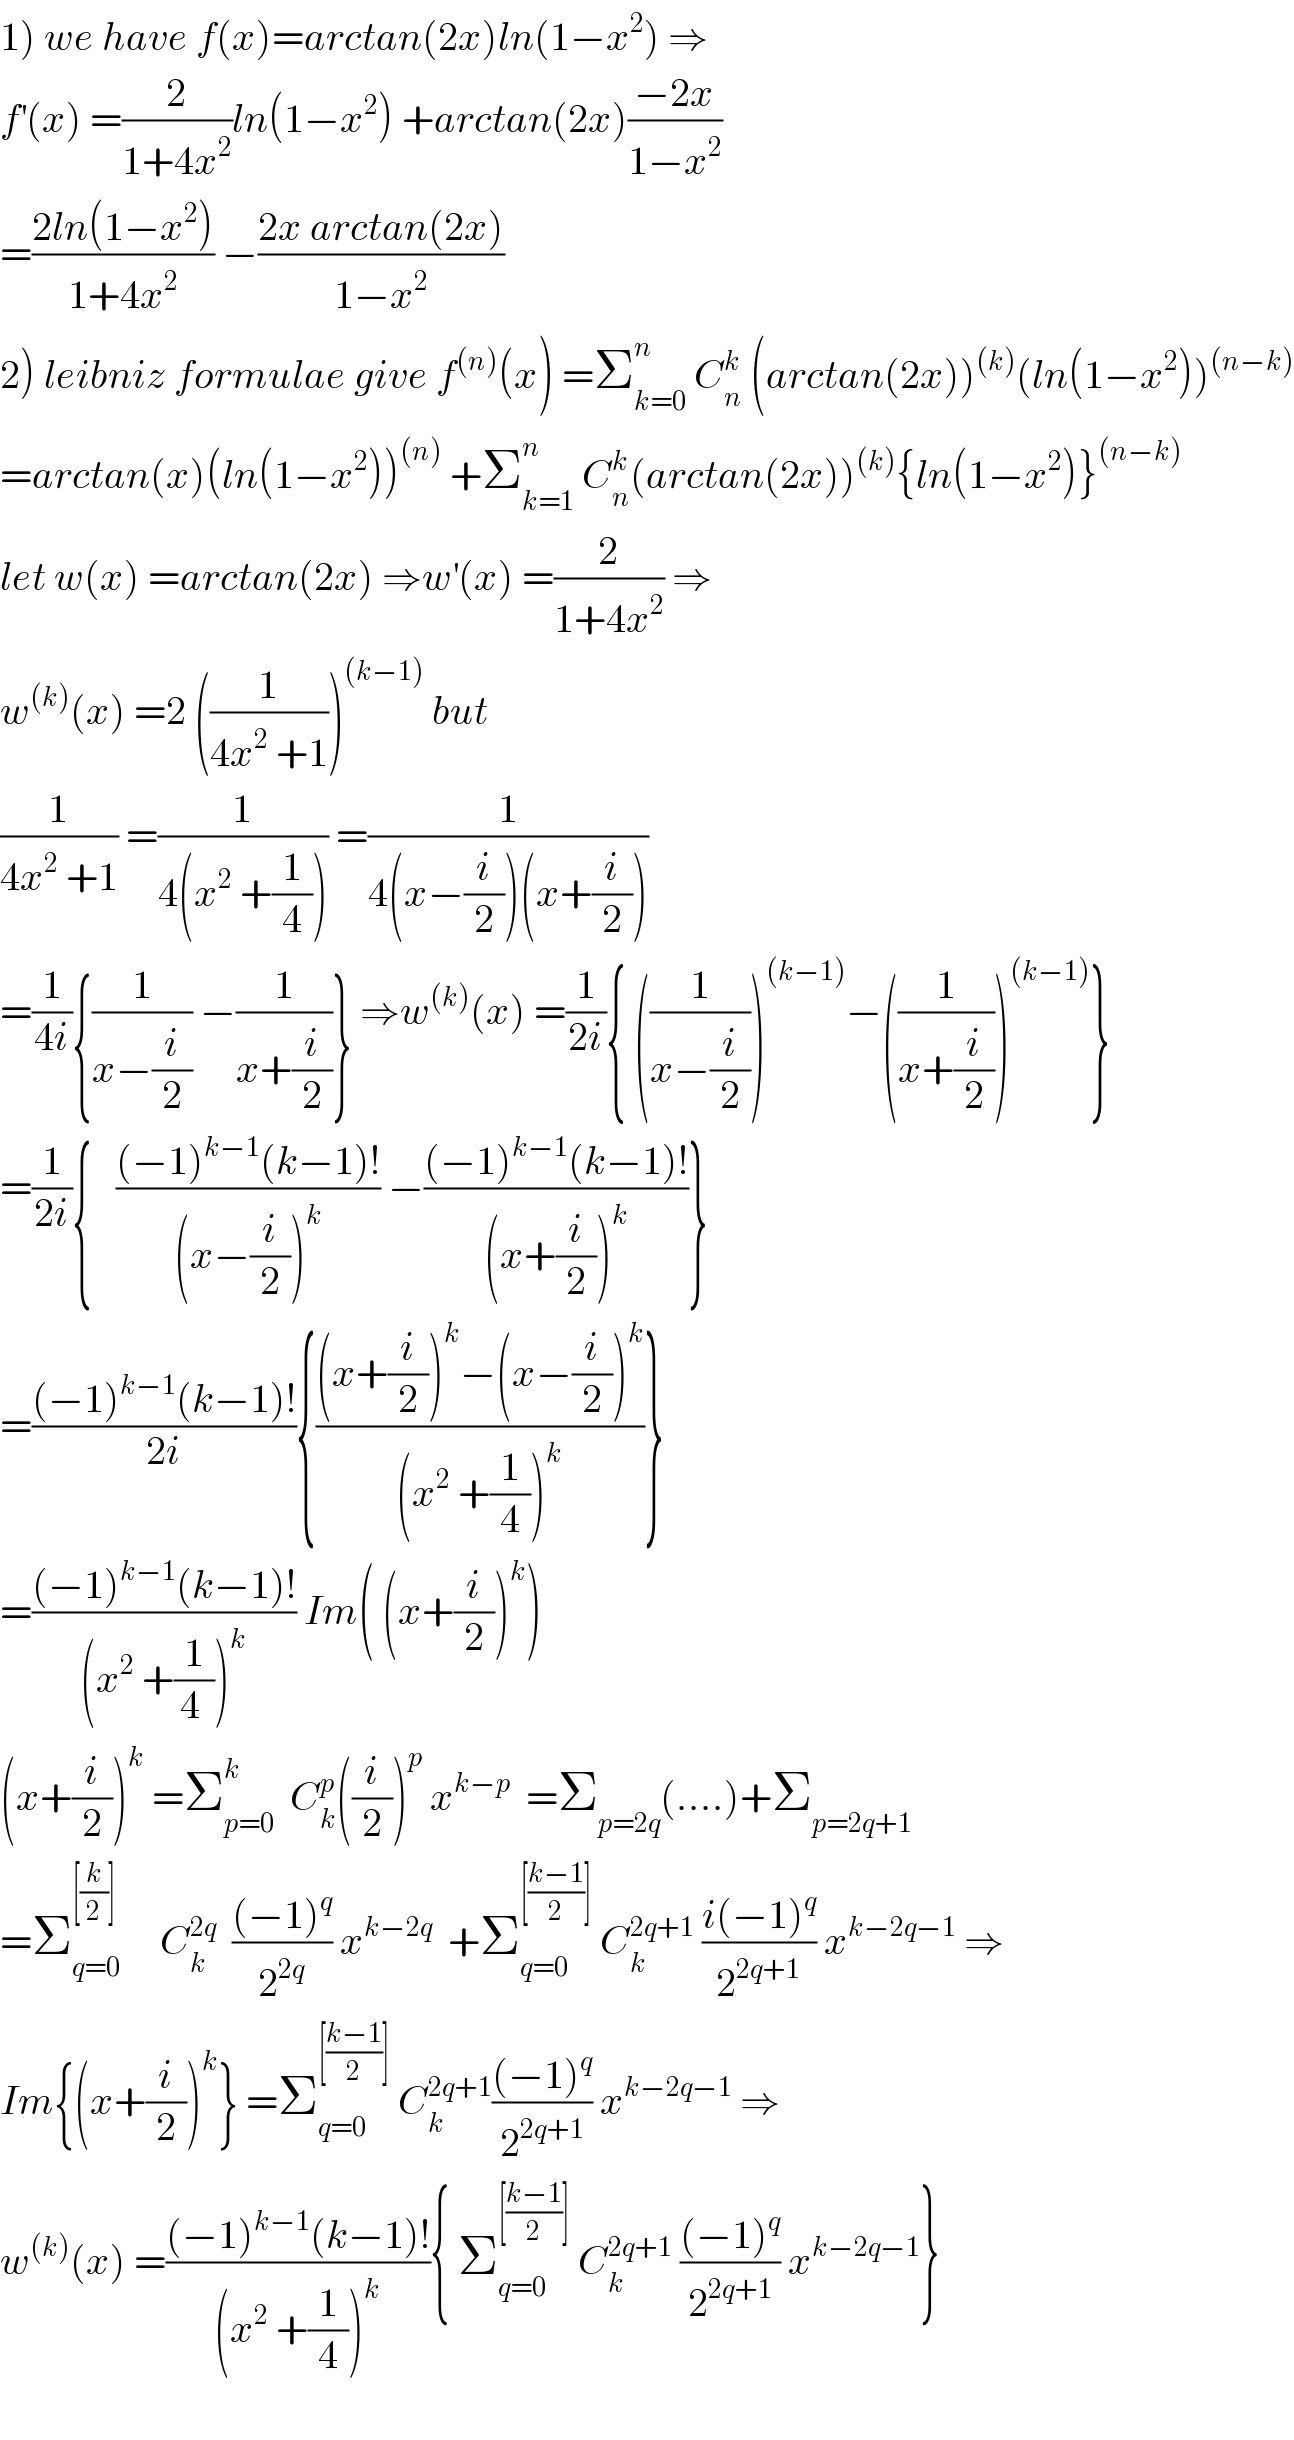 1) we have f(x)=arctan(2x)ln(1−x^2 ) ⇒  f^′ (x) =(2/(1+4x^2 ))ln(1−x^2 ) +arctan(2x)((−2x)/(1−x^2 ))  =((2ln(1−x^2 ))/(1+4x^2 )) −((2x arctan(2x))/(1−x^2 ))  2) leibniz formulae give f^((n)) (x) =Σ_(k=0) ^n  C_n ^k  (arctan(2x))^((k)) (ln(1−x^2 ))^((n−k))   =arctan(x)(ln(1−x^2 ))^((n))  +Σ_(k=1) ^n  C_n ^k (arctan(2x))^((k)) {ln(1−x^2 )}^((n−k))   let w(x) =arctan(2x) ⇒w^′ (x) =(2/(1+4x^2 )) ⇒  w^((k)) (x) =2 ((1/(4x^2  +1)))^((k−1))  but  (1/(4x^2  +1)) =(1/(4(x^2  +(1/4)))) =(1/(4(x−(i/2))(x+(i/2))))  =(1/(4i)){(1/(x−(i/2))) −(1/(x+(i/2)))} ⇒w^((k)) (x) =(1/(2i)){ ((1/(x−(i/2))))^((k−1)) −((1/(x+(i/2))))^((k−1)) }  =(1/(2i)){   (((−1)^(k−1) (k−1)!)/((x−(i/2))^k )) −(((−1)^(k−1) (k−1)!)/((x+(i/2))^k ))}  =(((−1)^(k−1) (k−1)!)/(2i)){(((x+(i/2))^k −(x−(i/2))^k )/((x^2  +(1/4))^k ))}  =(((−1)^(k−1) (k−1)!)/((x^2  +(1/(4 )))^k )) Im( (x+(i/2))^k )  (x+(i/2))^k  =Σ_(p=0) ^k   C_k ^p ((i/2))^p  x^(k−p)   =Σ_(p=2q) (....)+Σ_(p=2q+1)   =Σ_(q=0) ^([(k/2)])      C_k ^(2q)   (((−1)^q )/2^(2q) ) x^(k−2q)   +Σ_(q=0) ^([((k−1)/2)])  C_k ^(2q+1)  ((i(−1)^q )/2^(2q+1) ) x^(k−2q−1)  ⇒  Im{(x+(i/2))^k } =Σ_(q=0) ^([((k−1)/2)])  C_k ^(2q+1) (((−1)^q )/2^(2q+1) ) x^(k−2q−1)  ⇒  w^((k)) (x) =(((−1)^(k−1) (k−1)!)/((x^2  +(1/4))^k )){ Σ_(q=0) ^([((k−1)/2)])  C_k ^(2q+1)  (((−1)^q )/2^(2q+1) ) x^(k−2q−1) }    